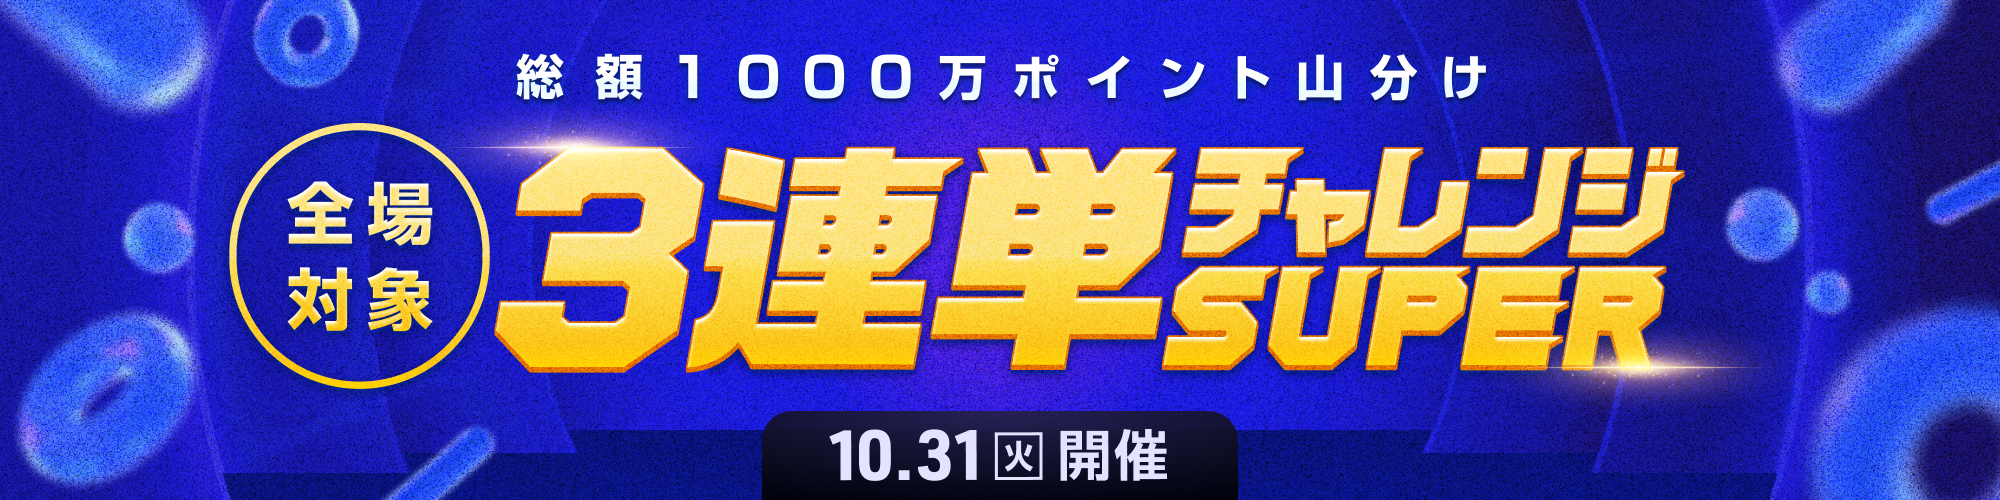 【1,000万山分け!!】全場対象3連単チャレンジSUPER